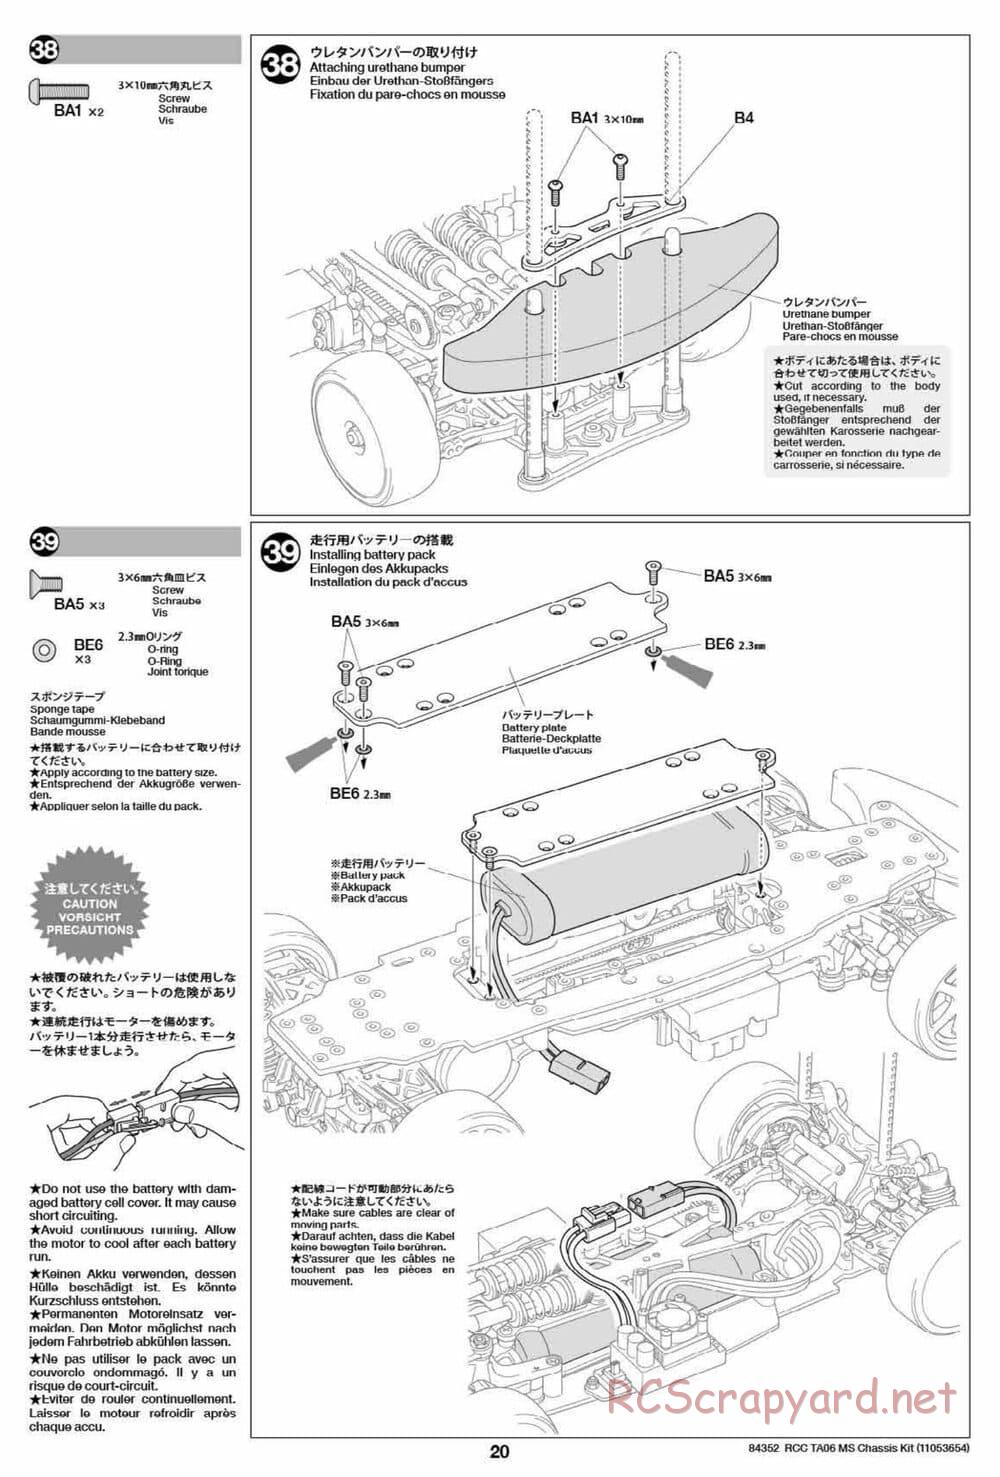 Tamiya - TA06 MS Chassis - Manual - Page 20